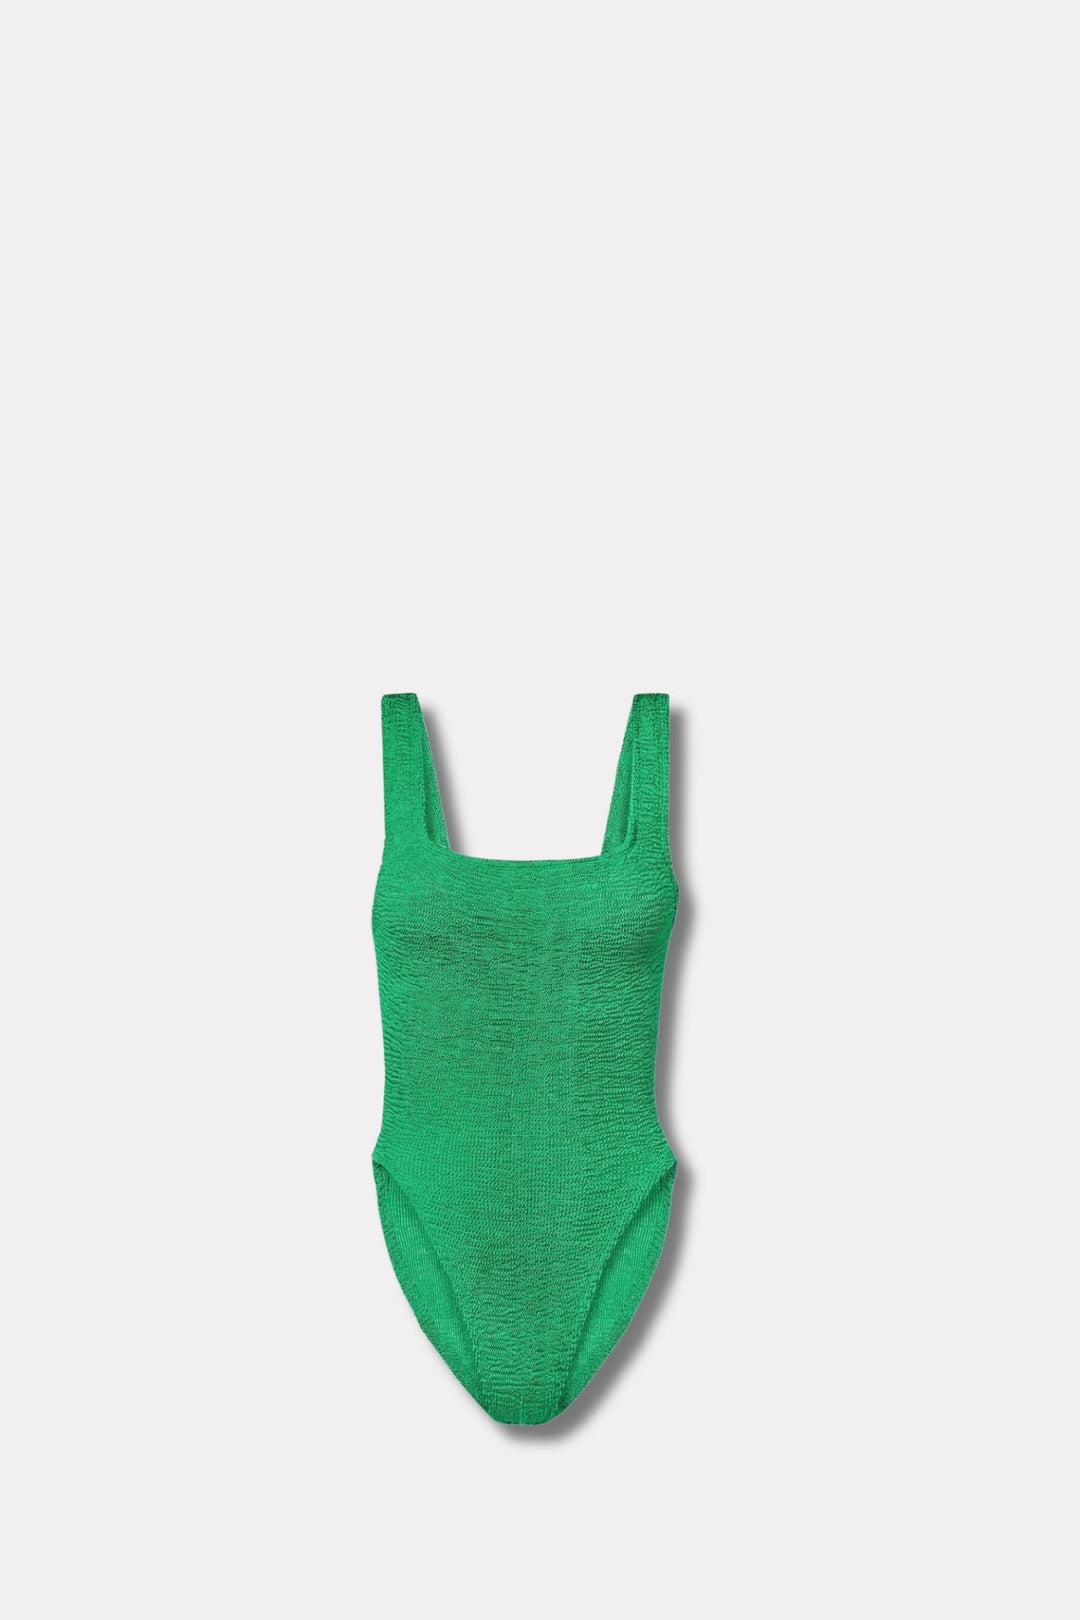 Square neck swim- Emerald green